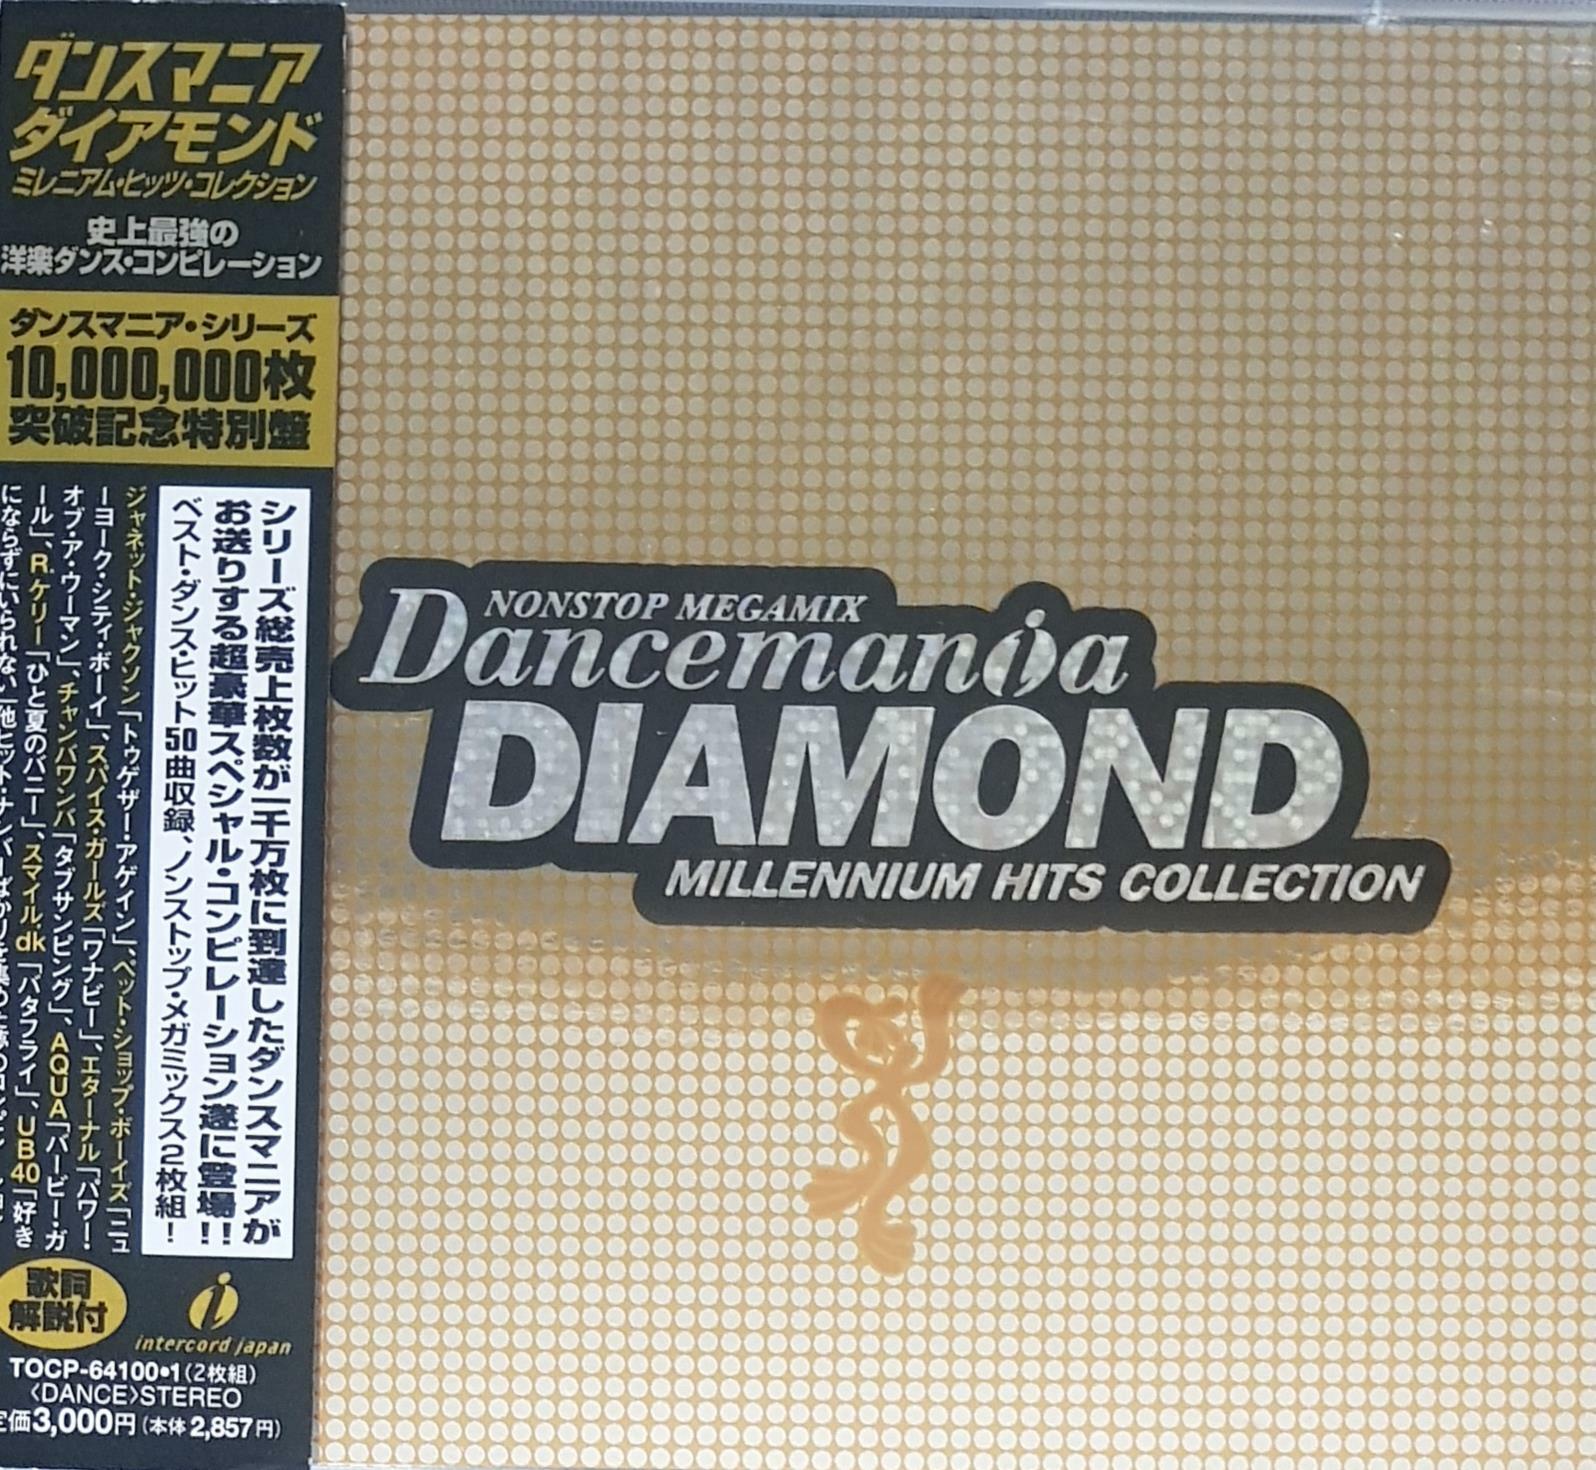 [중고] [일본반][CD] V.A - Dancemania Diamond (Millennium Hits Collection) [2CD]